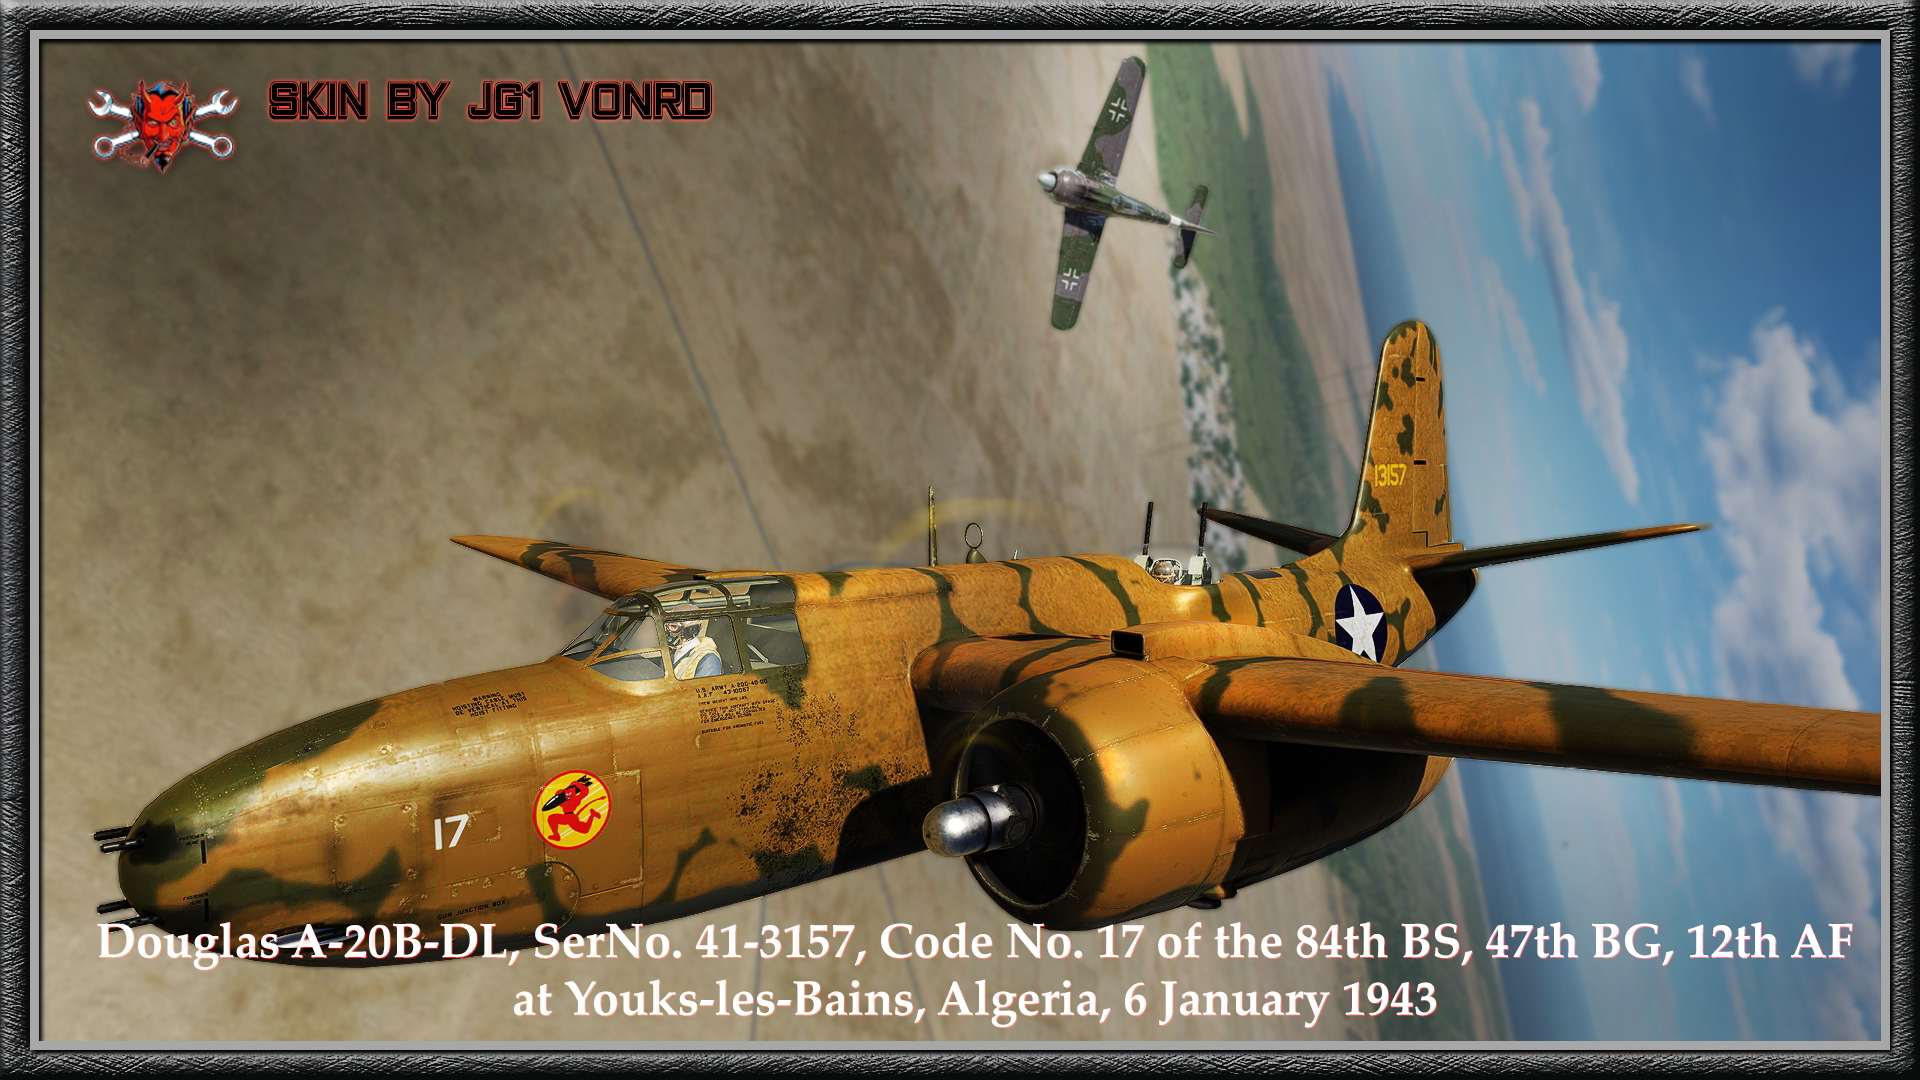 A-20 - USAF_84th BS 47th BG N. Africa 41-3157